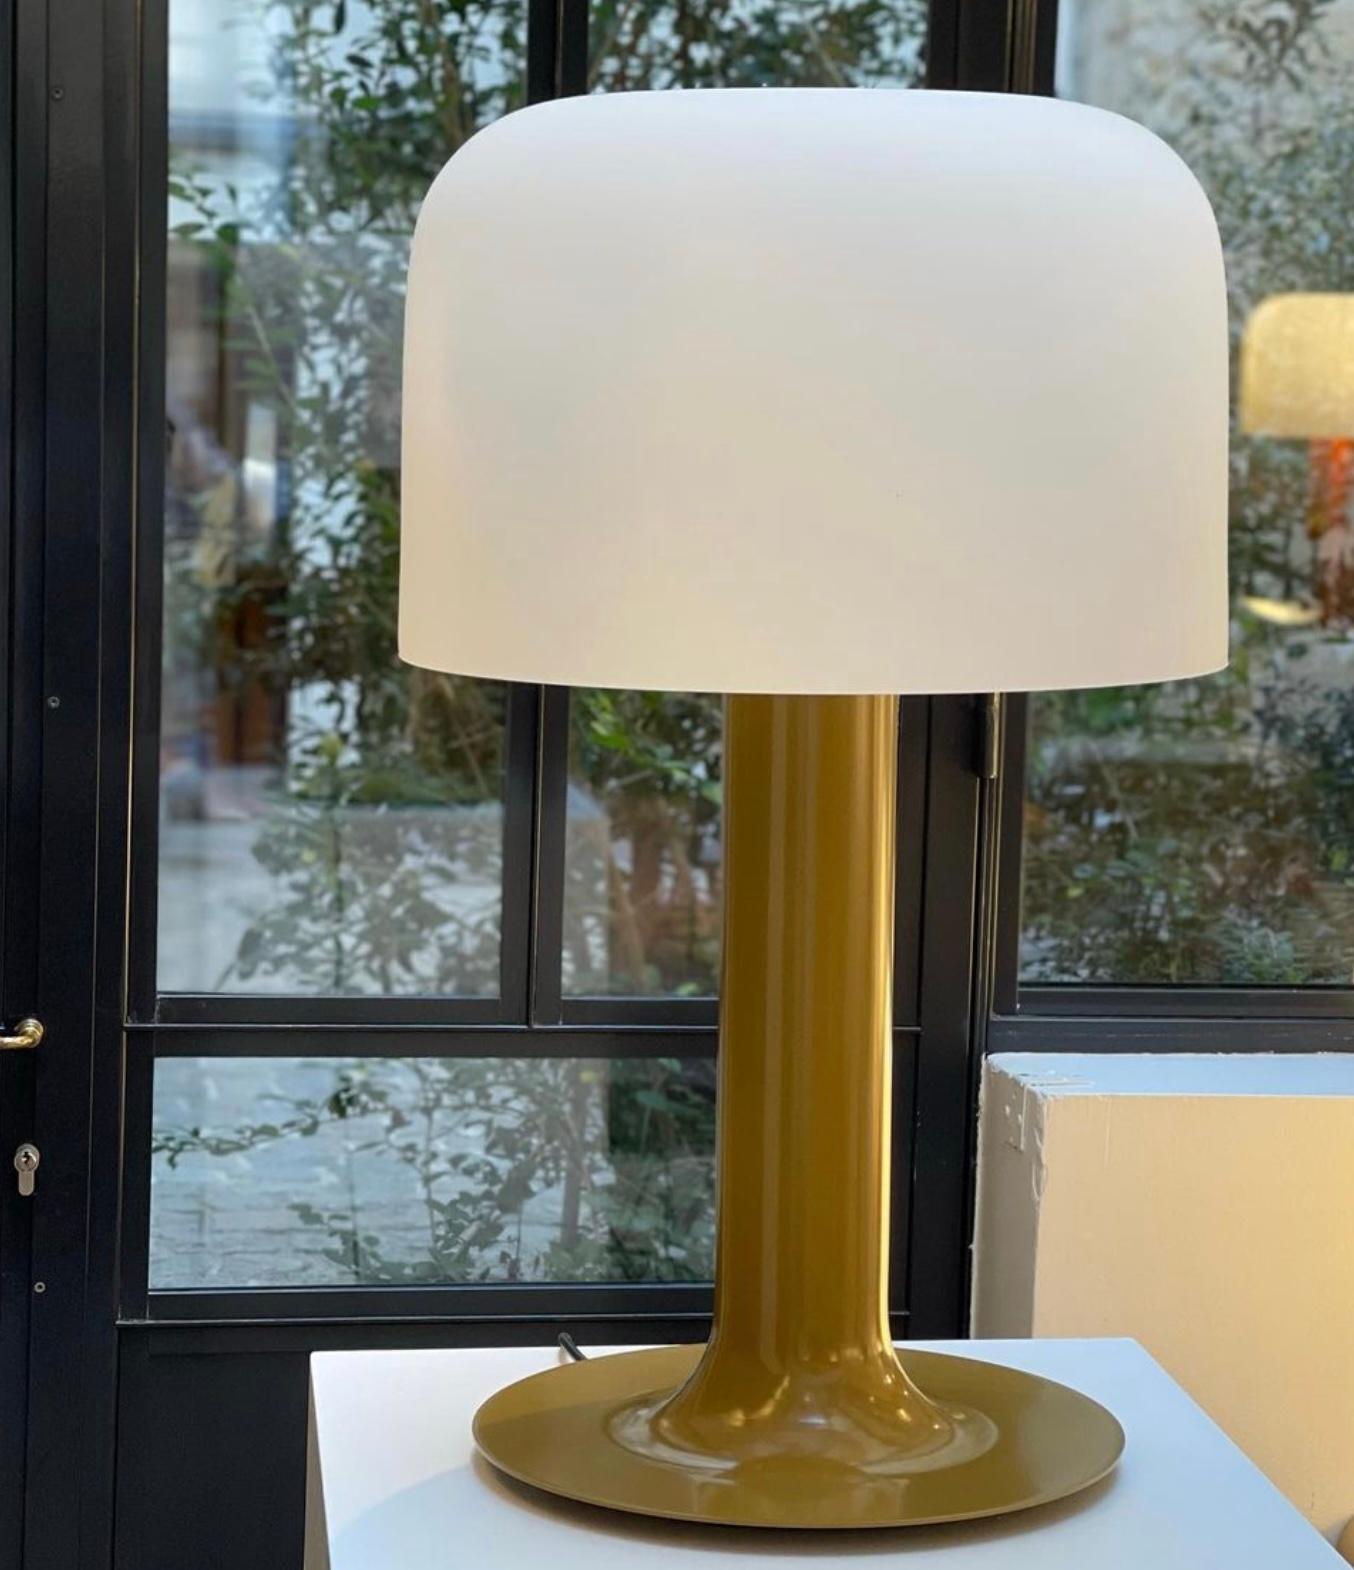 Lampe de table en métal et verre Michel Mortier 10497 pour Disderot en chamois.

Conçue à l'origine en 1972, cette lampe de table sculpturale est une nouvelle édition numérotée produite avec un certificat d'authentification. Fabriqué en France par